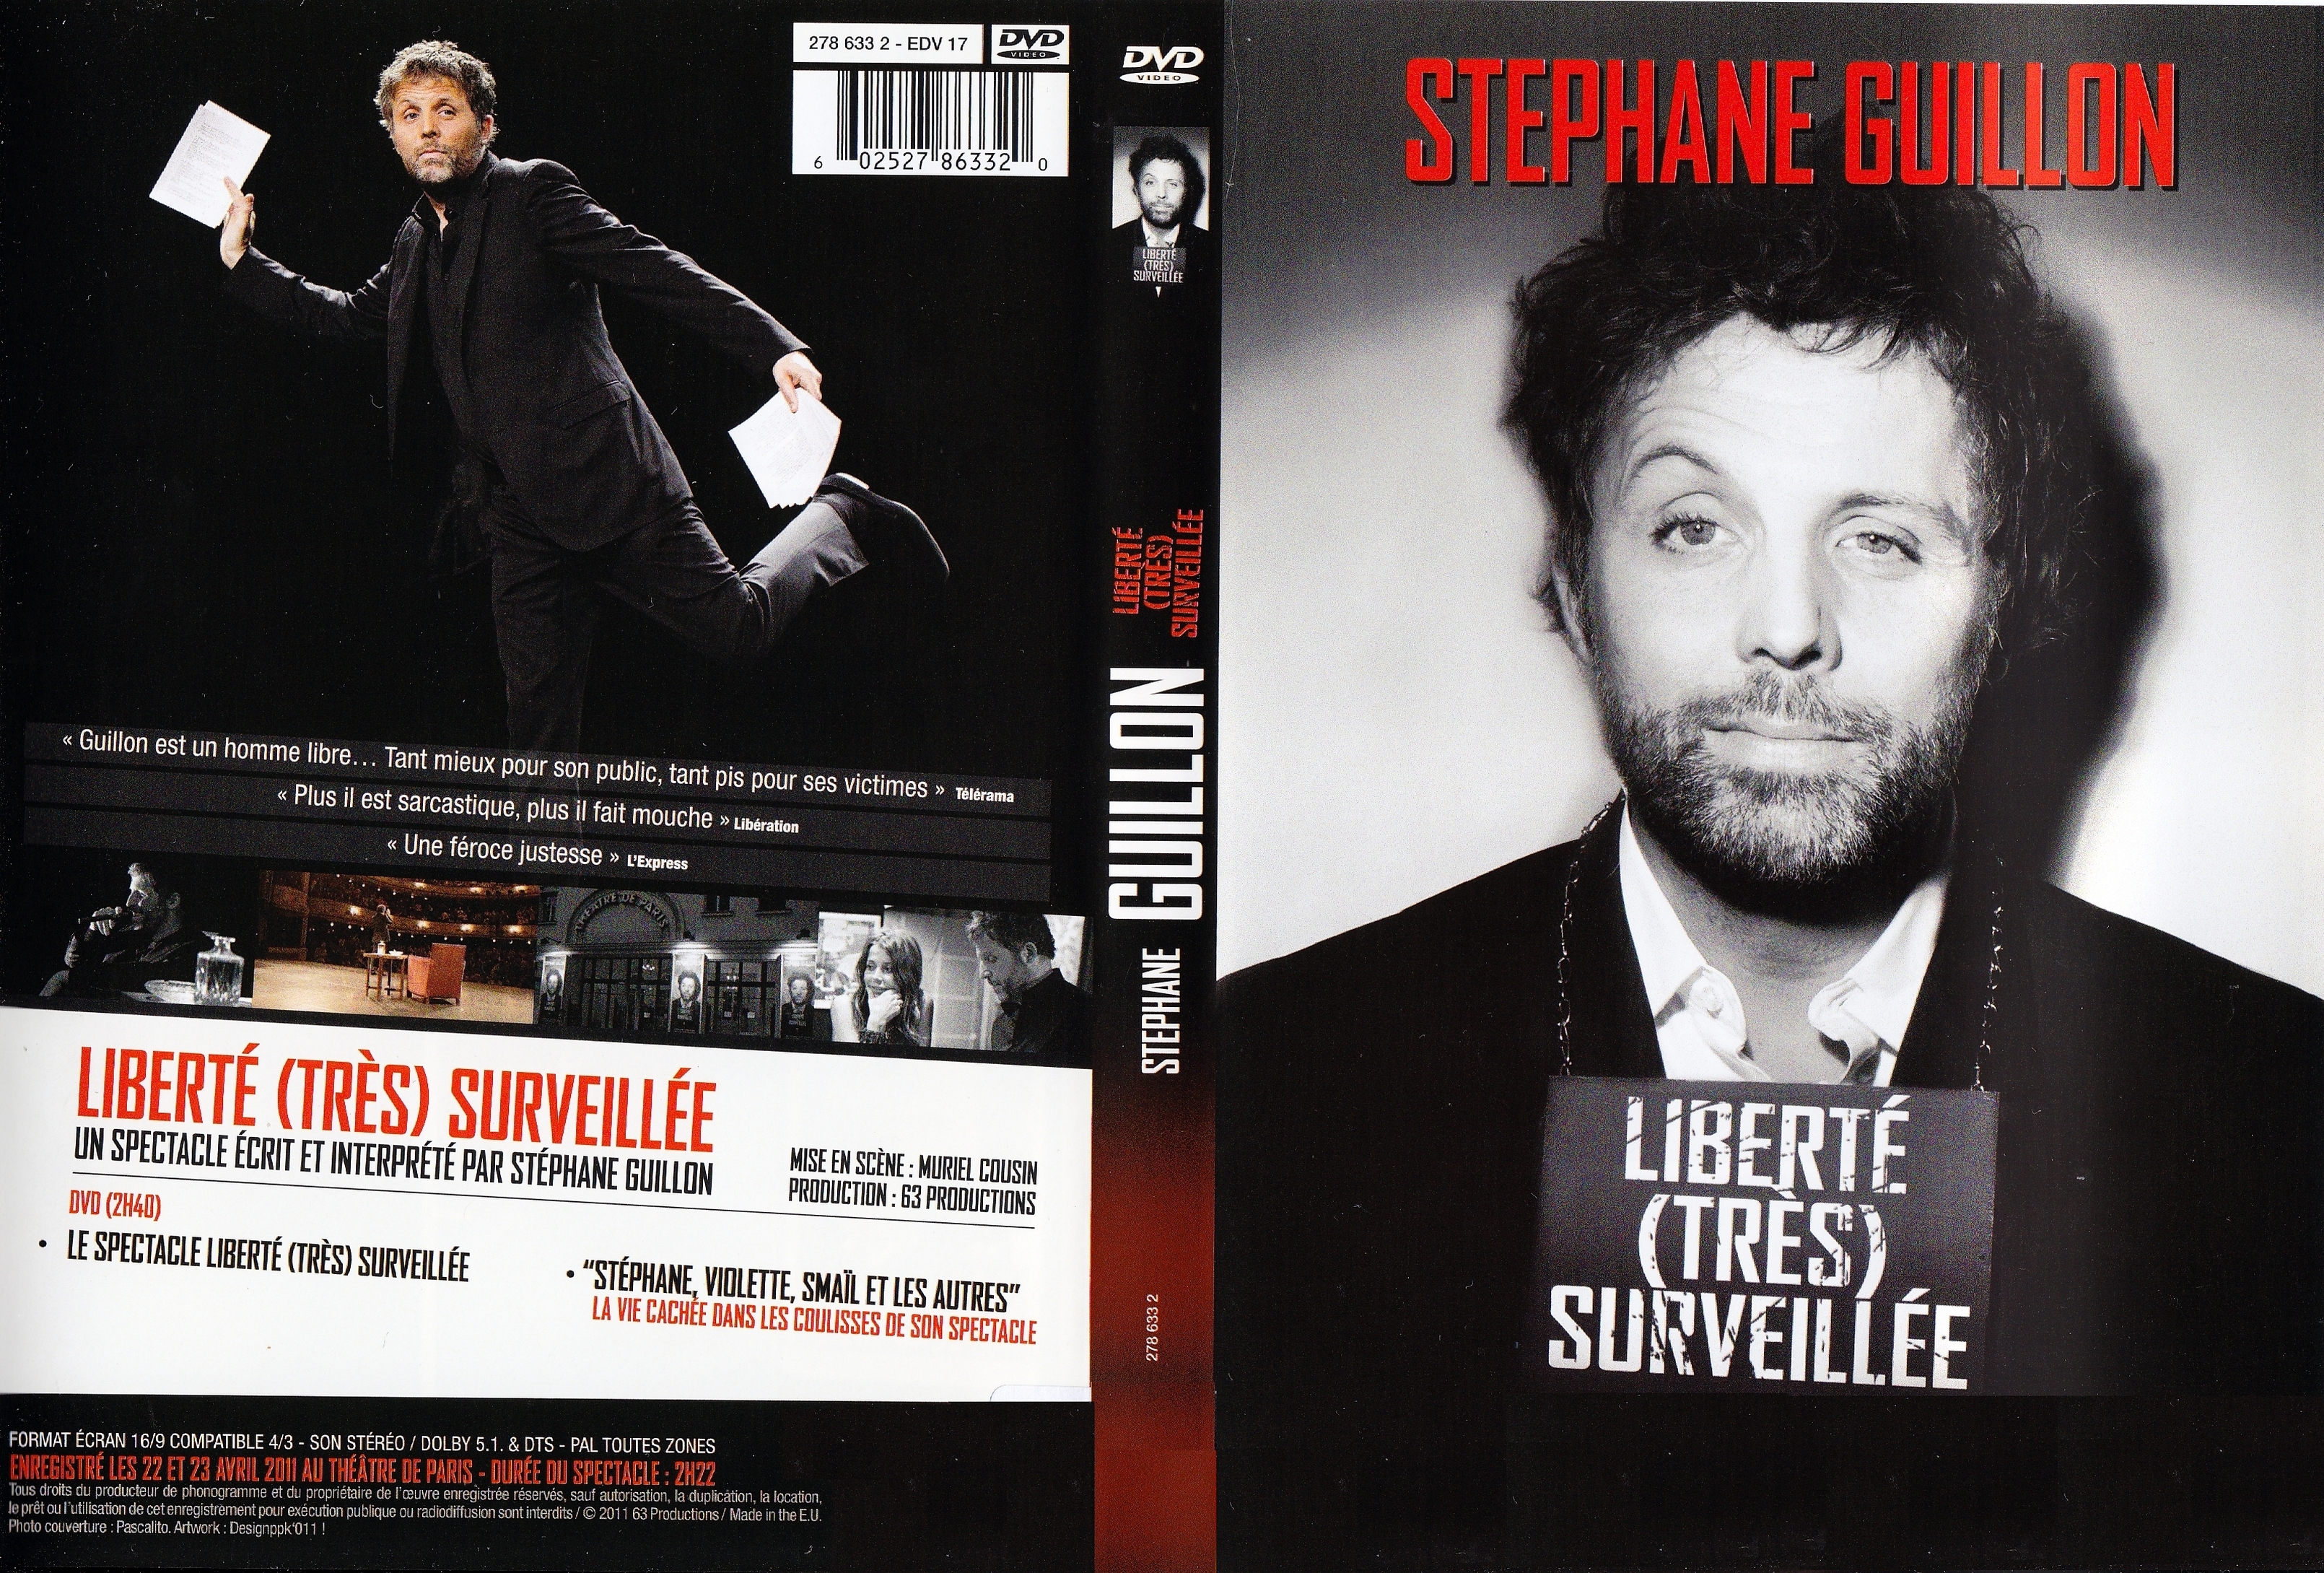 Jaquette DVD Stephane Guillon - Libert trs surveille